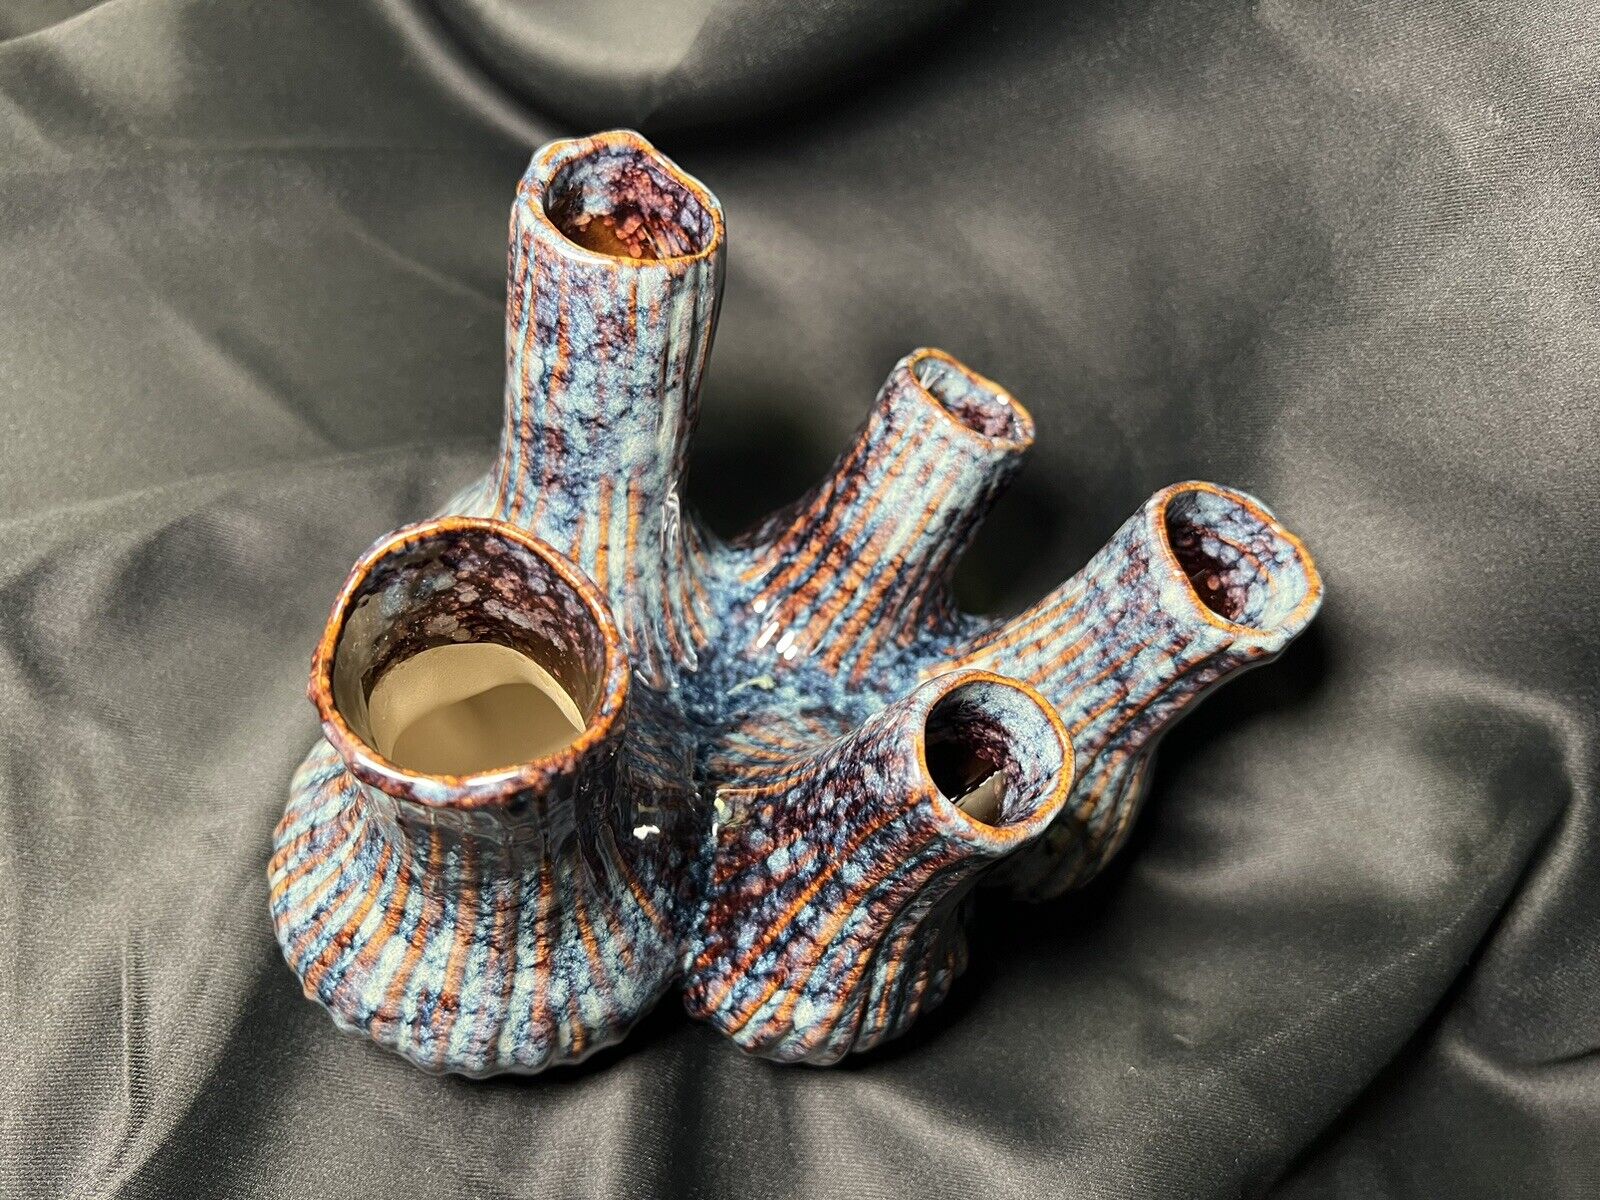 Ceramic vase/flower pot vase / Ceramic Sculpture / Propogation / Coral